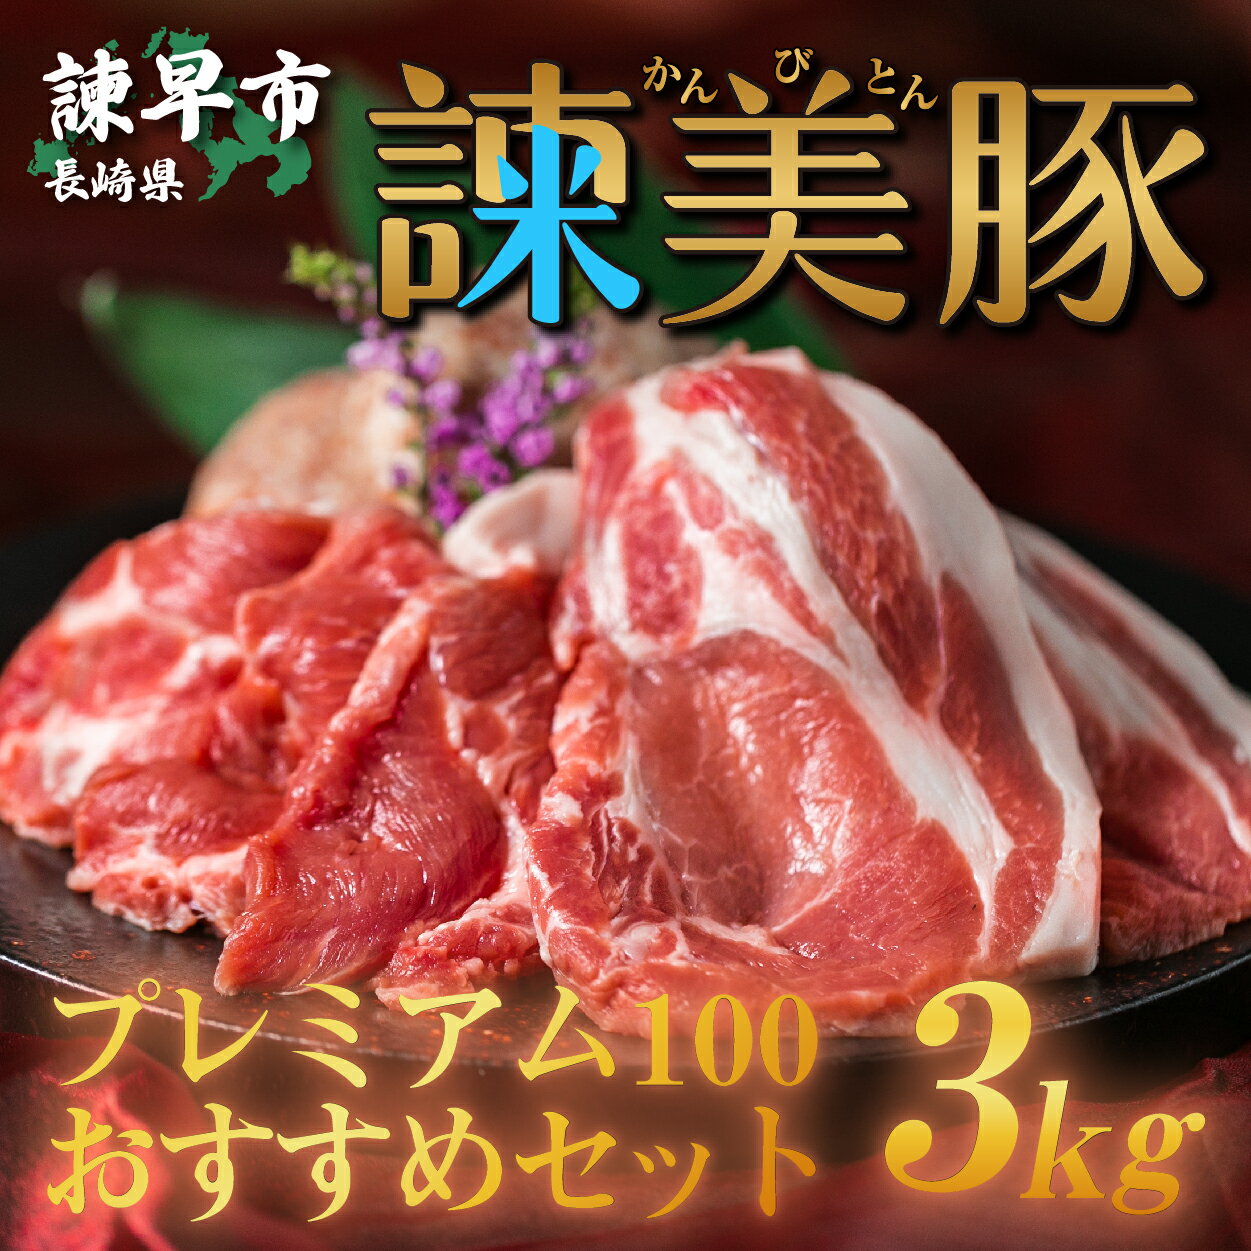 【ふるさと納税】諫美豚プレミアム3kg / 豚肉 ロースステ